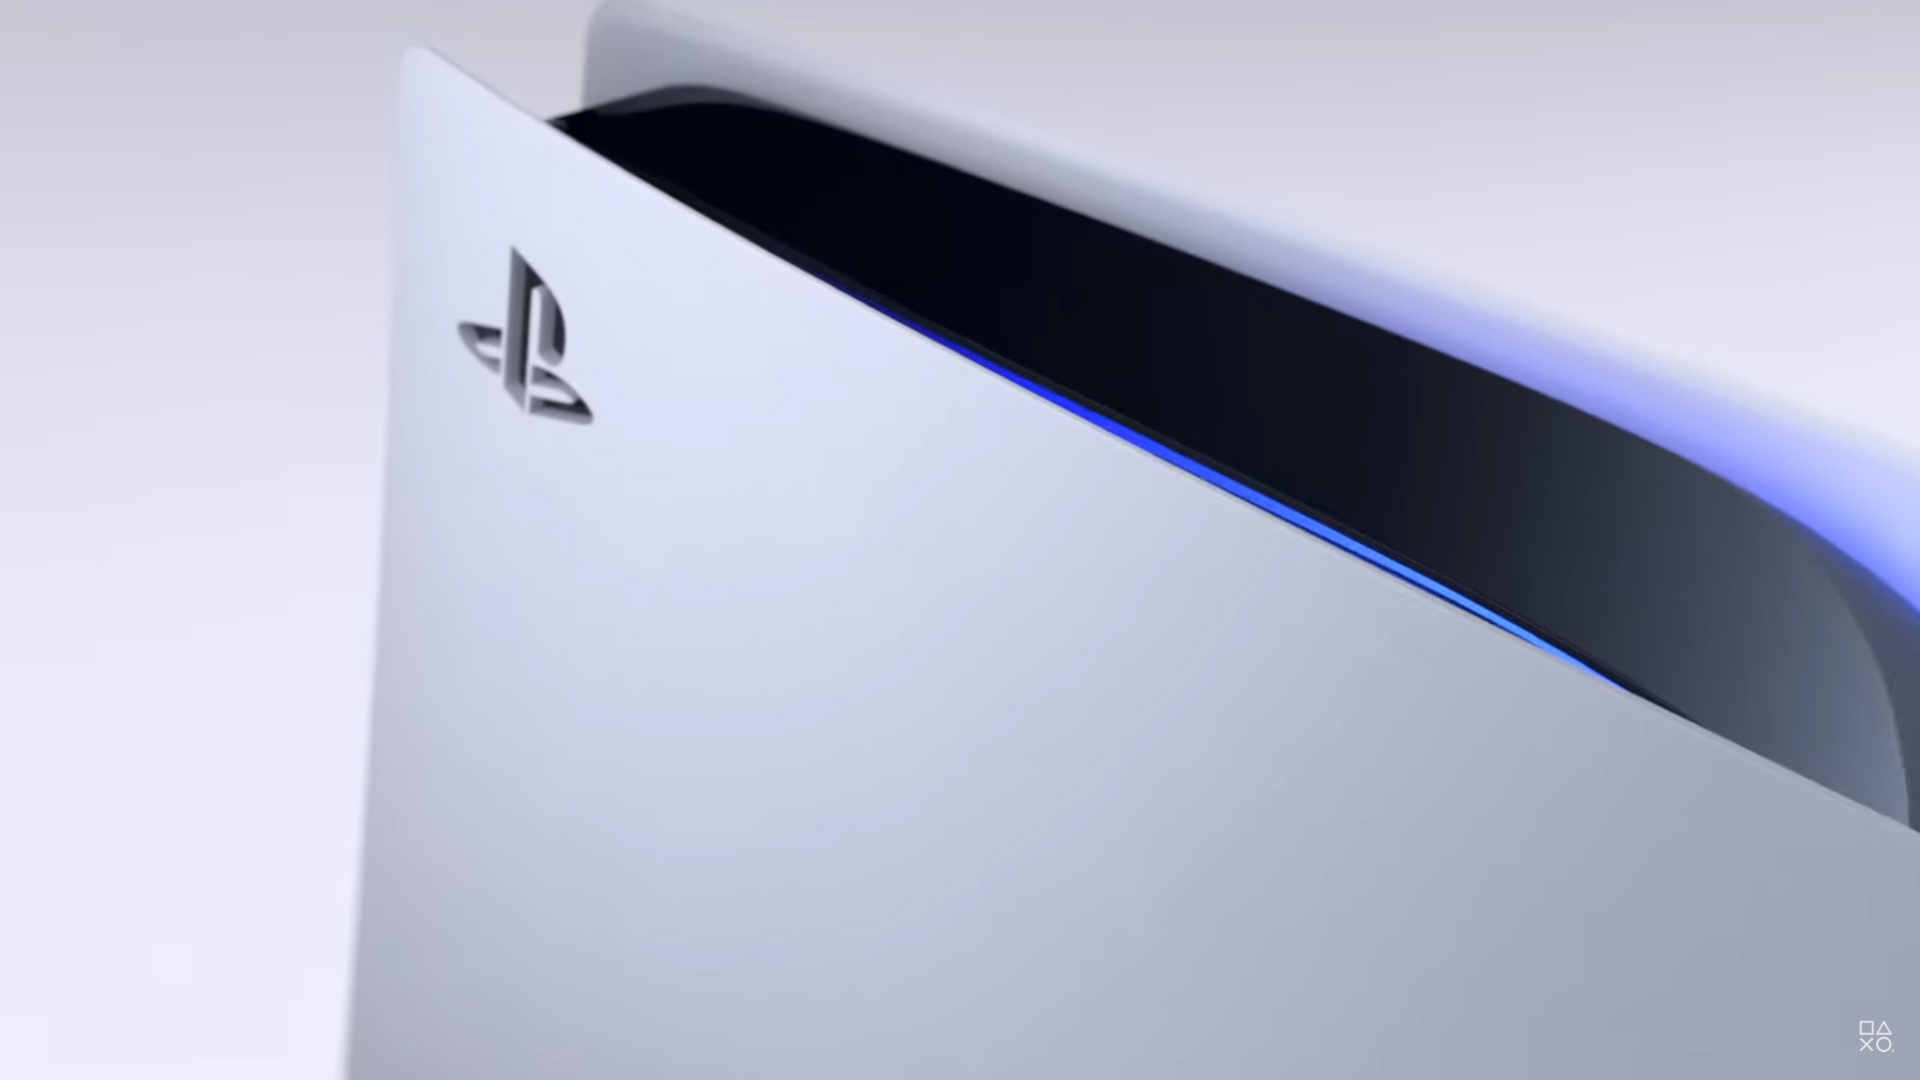 PS5 : Taille, exclusivités, Sony aborde certains aspects de la console